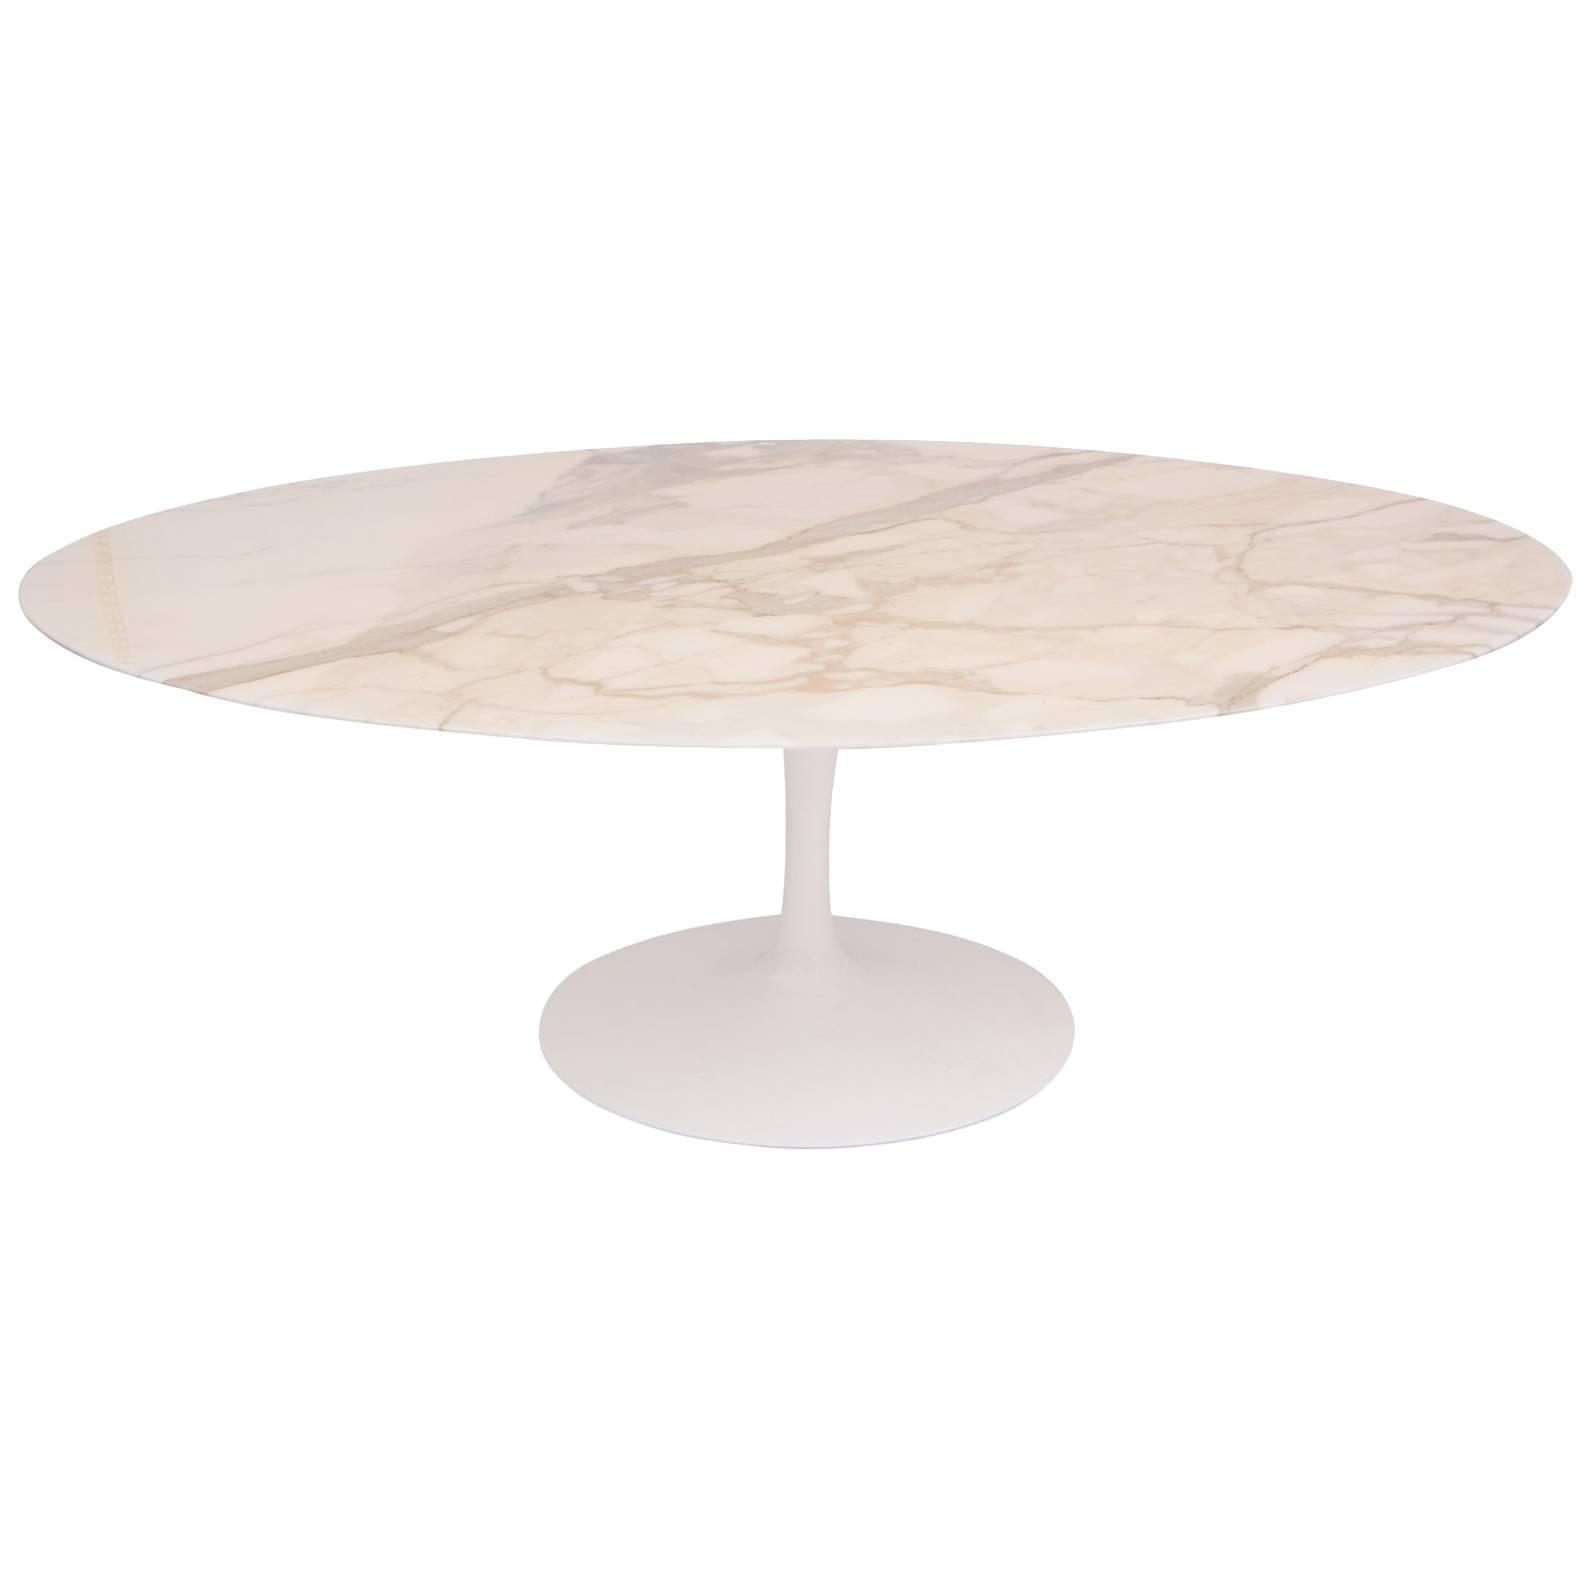 Eero Saarinen Knoll Calacatta Marble Oval Dining Table